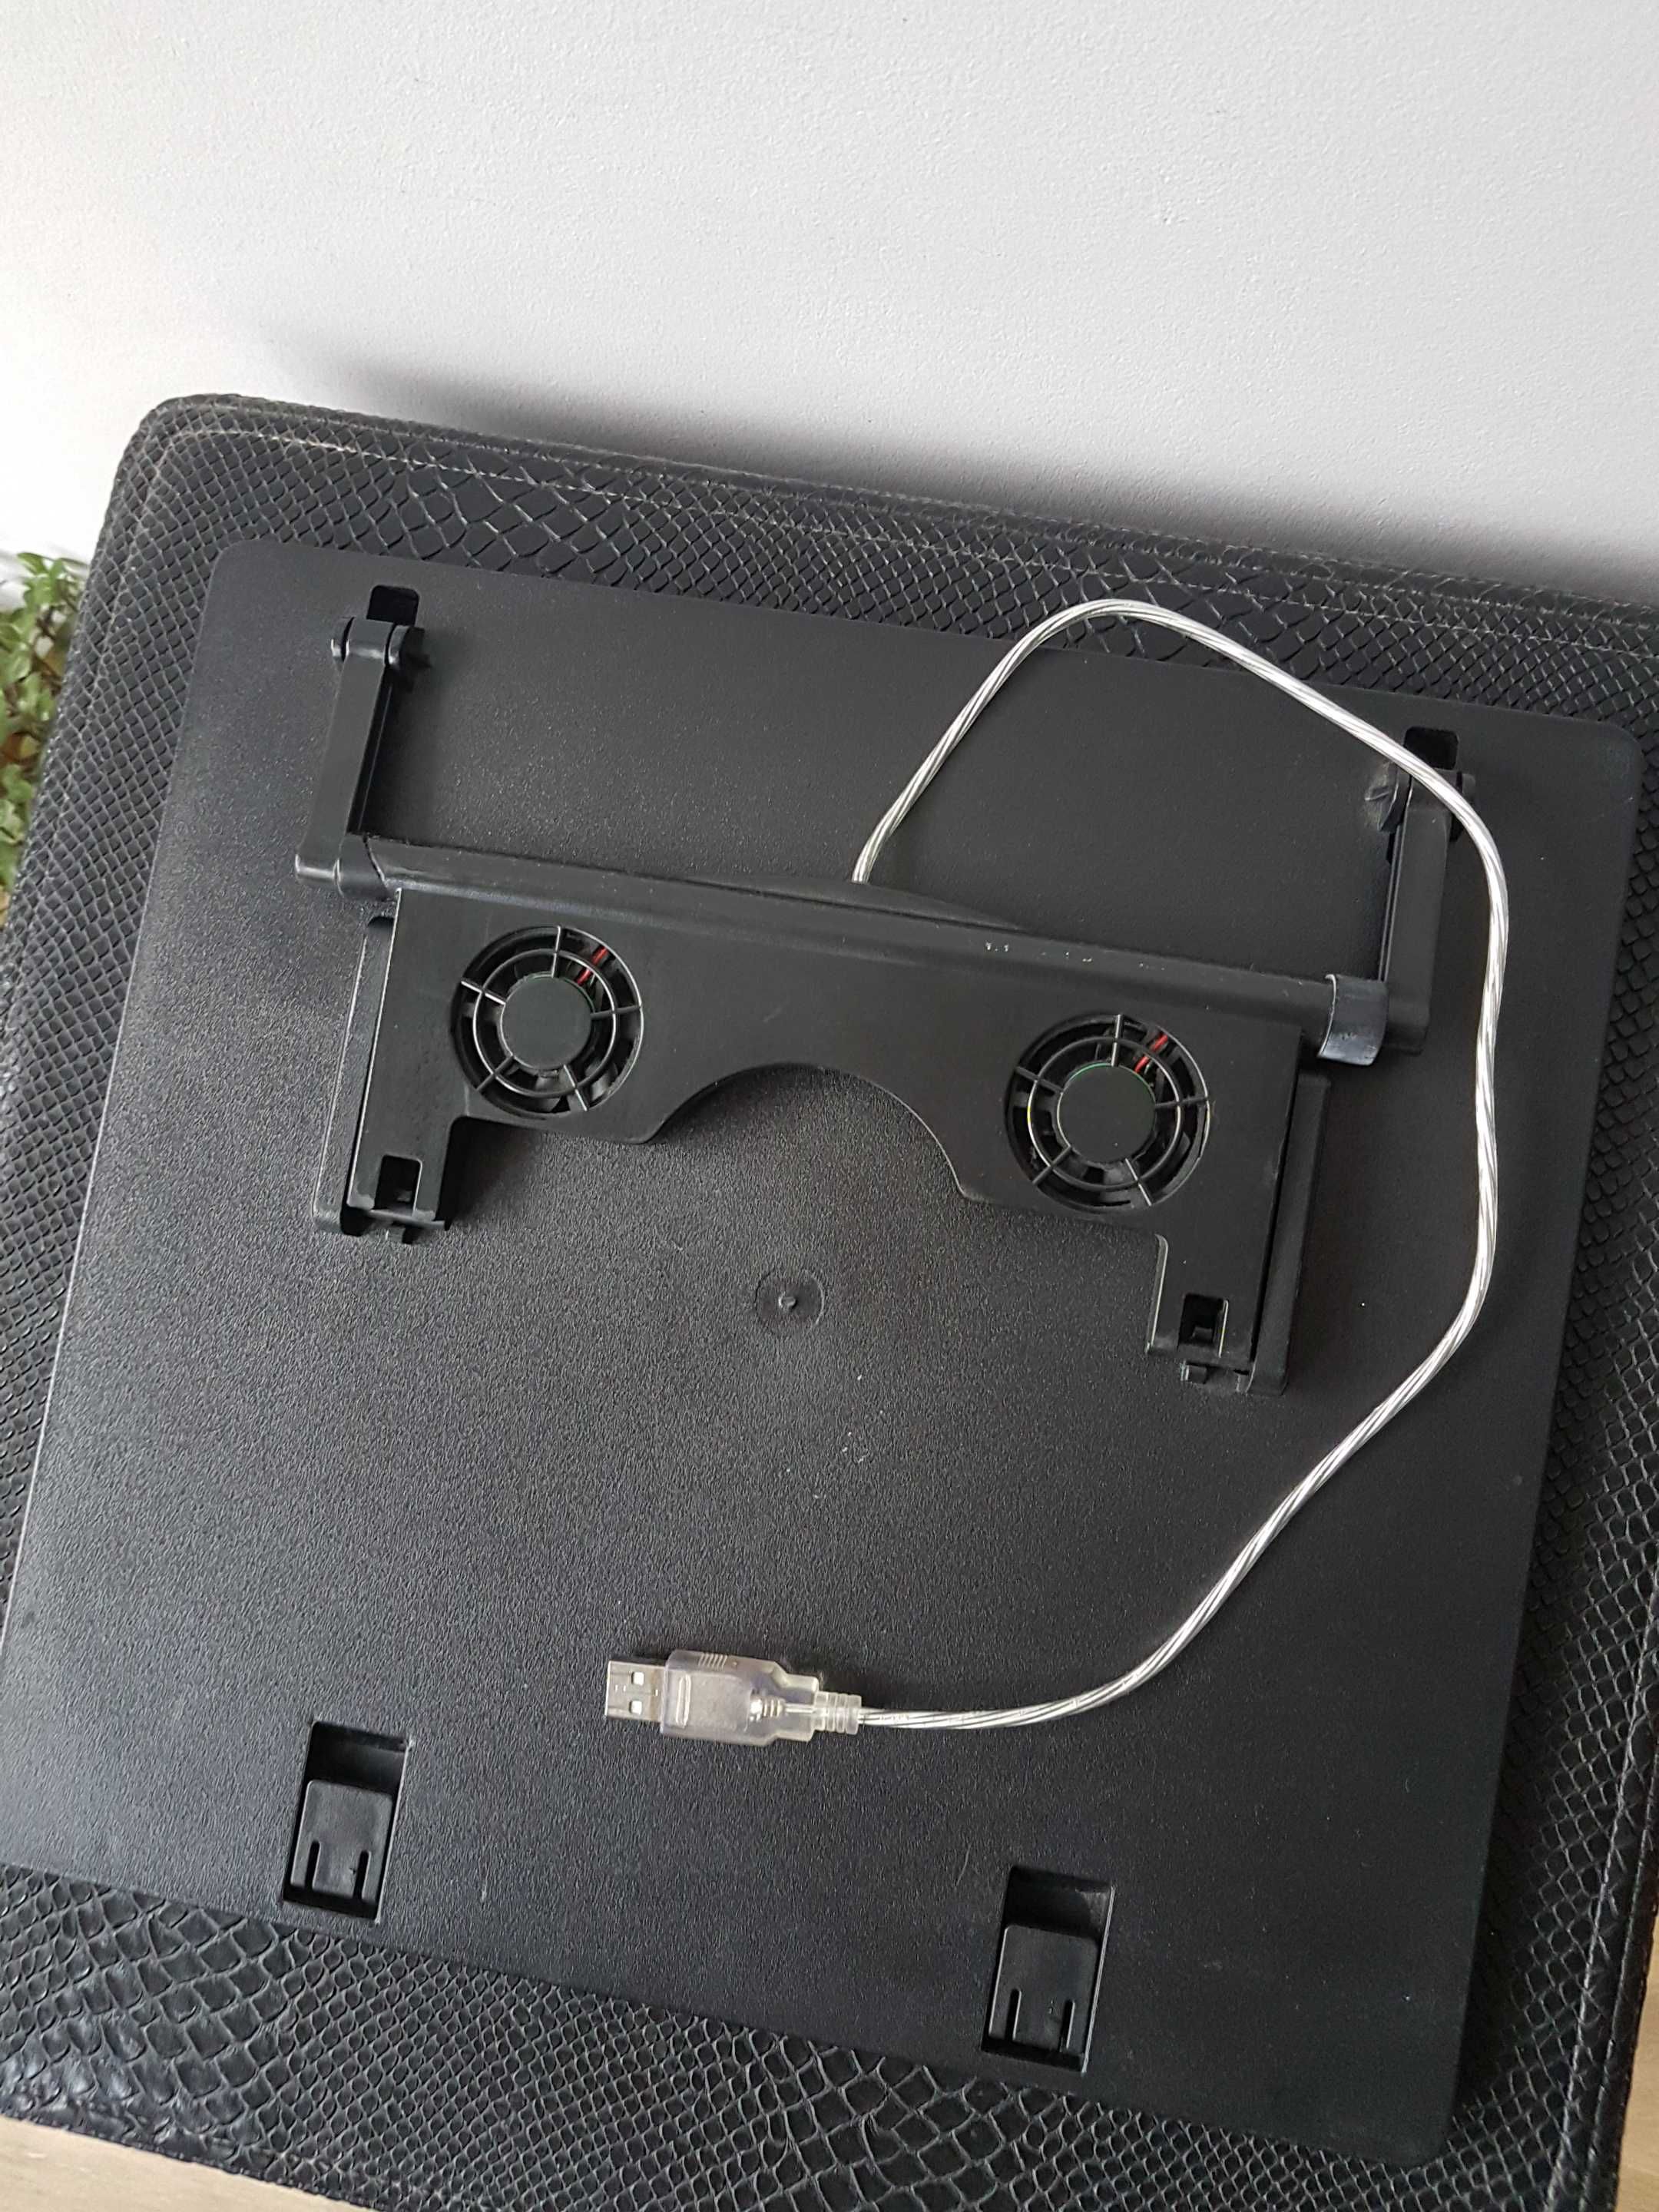 Podstawka pod laptop chłodząca dwa wentylatory USB obrotowa